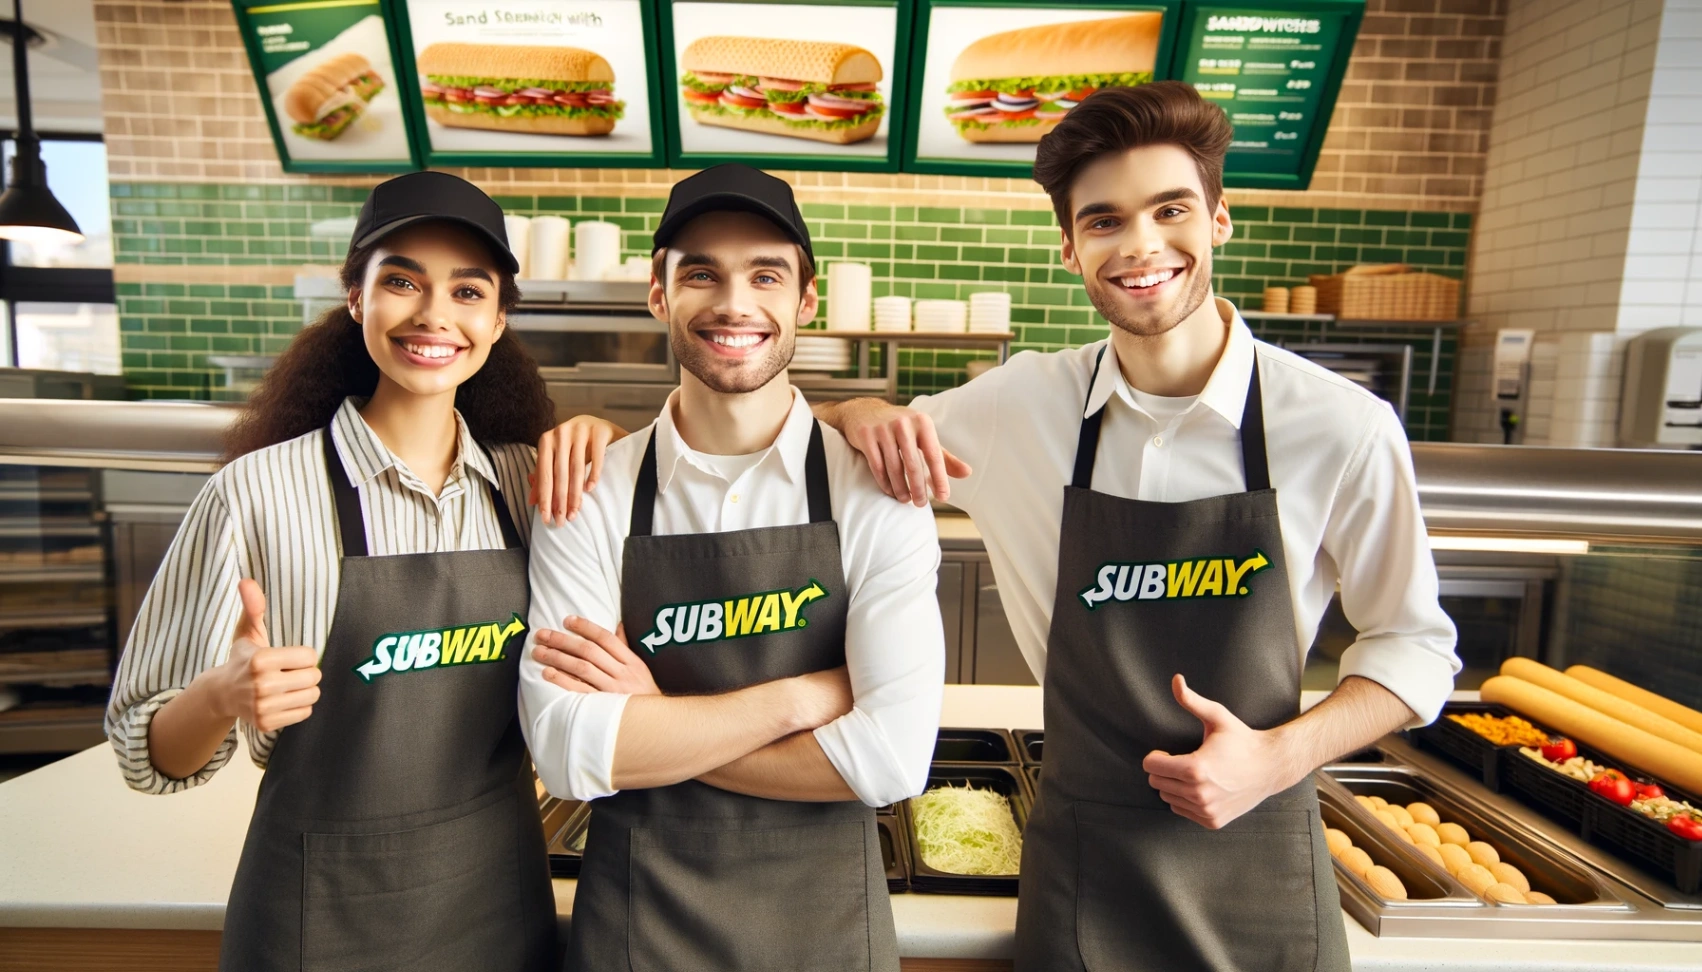 Offerte di lavoro presso Subway: Scopri come candidarti online